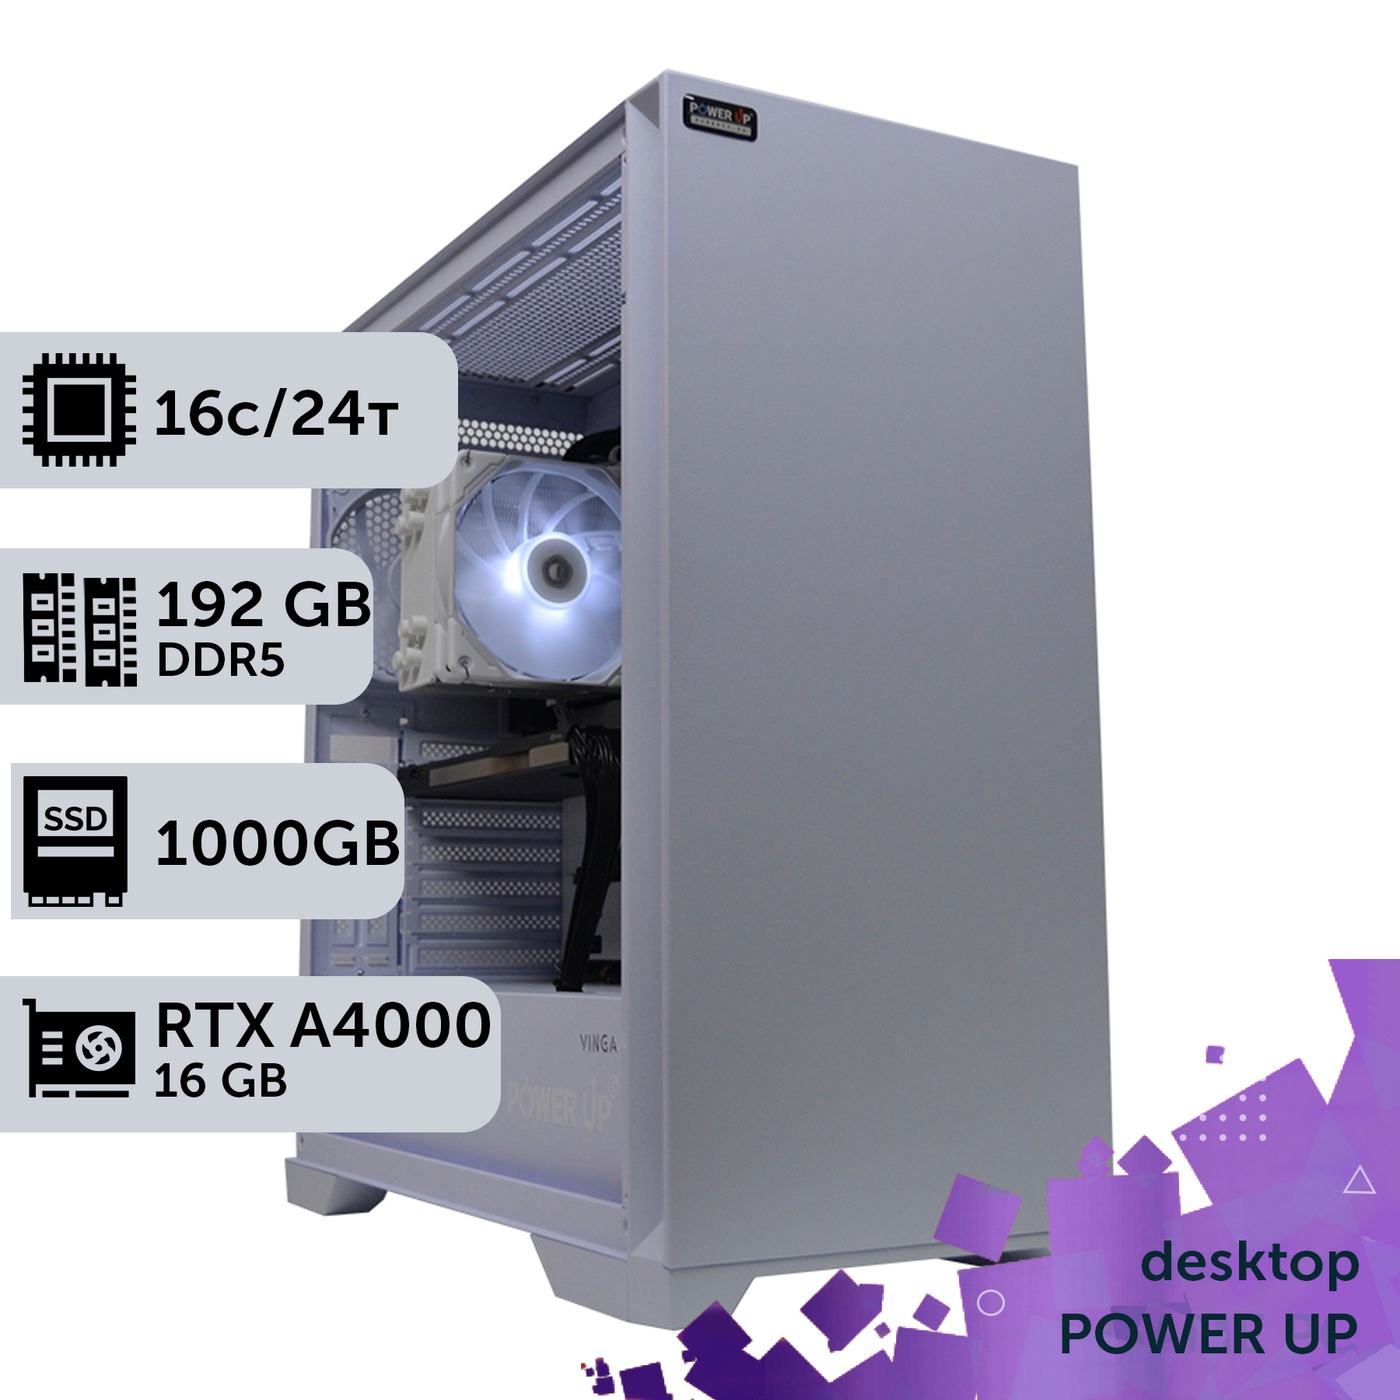 Рабочая станция PowerUp Desktop #277 Core i7 13700K/192 GB/SSD 1TB/NVIDIA Quadro RTX A4000 16GB